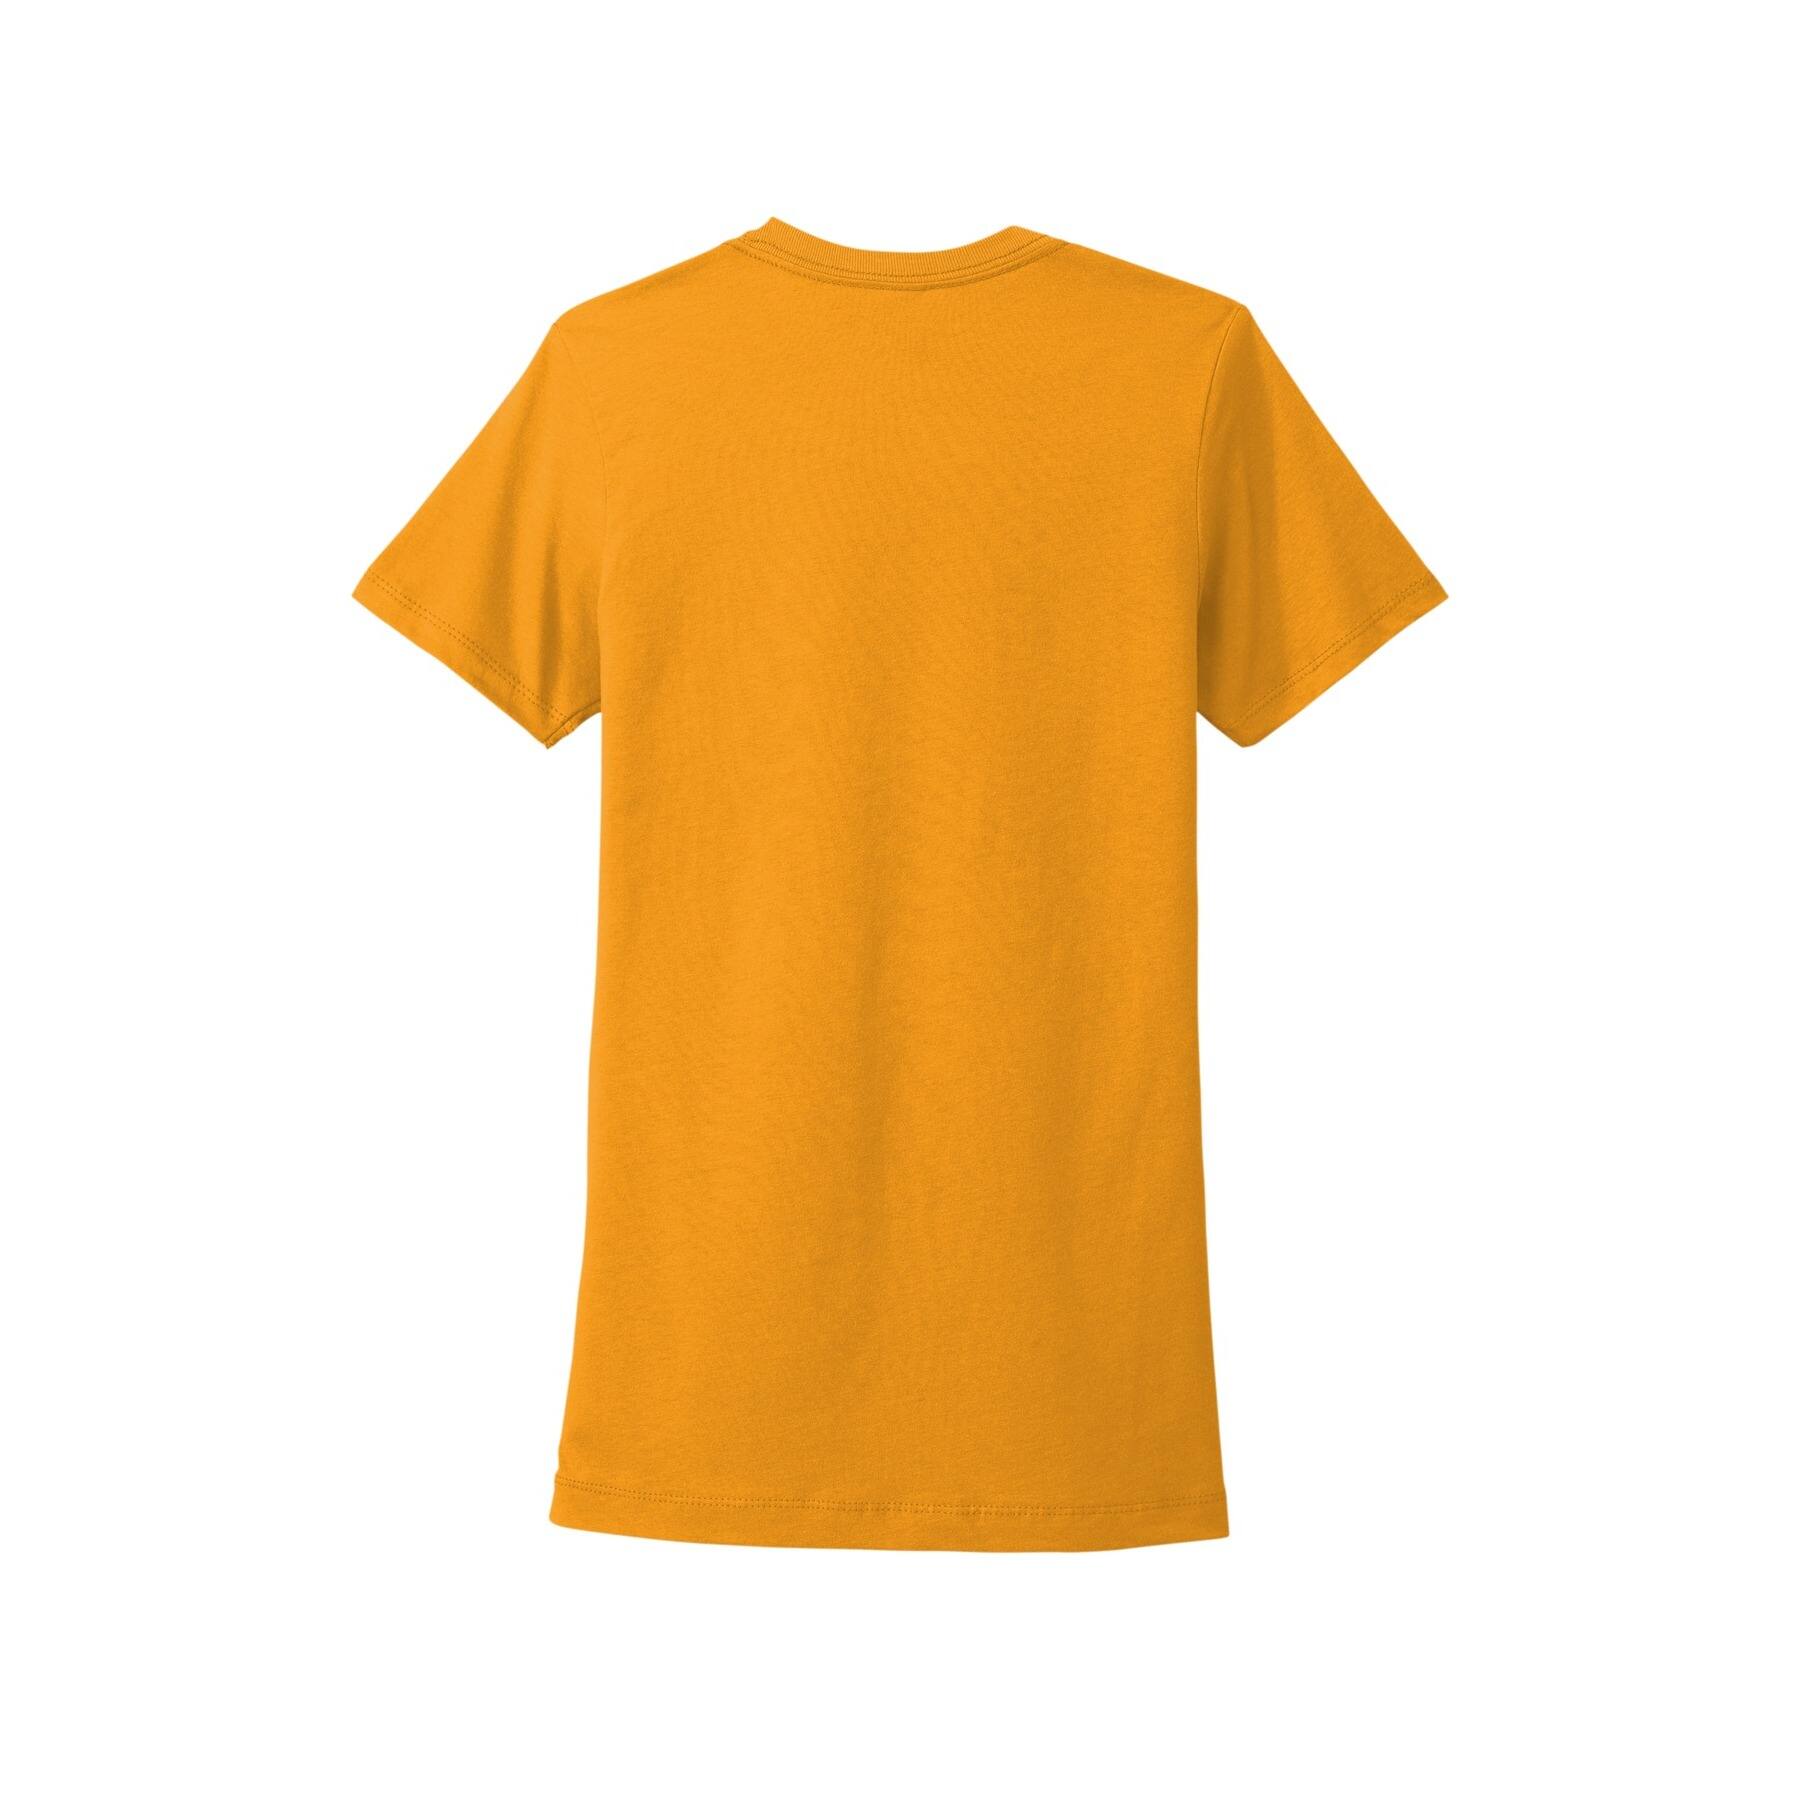 Next Level Colors Women&#x27;s Cotton Boyfriend T-Shirt